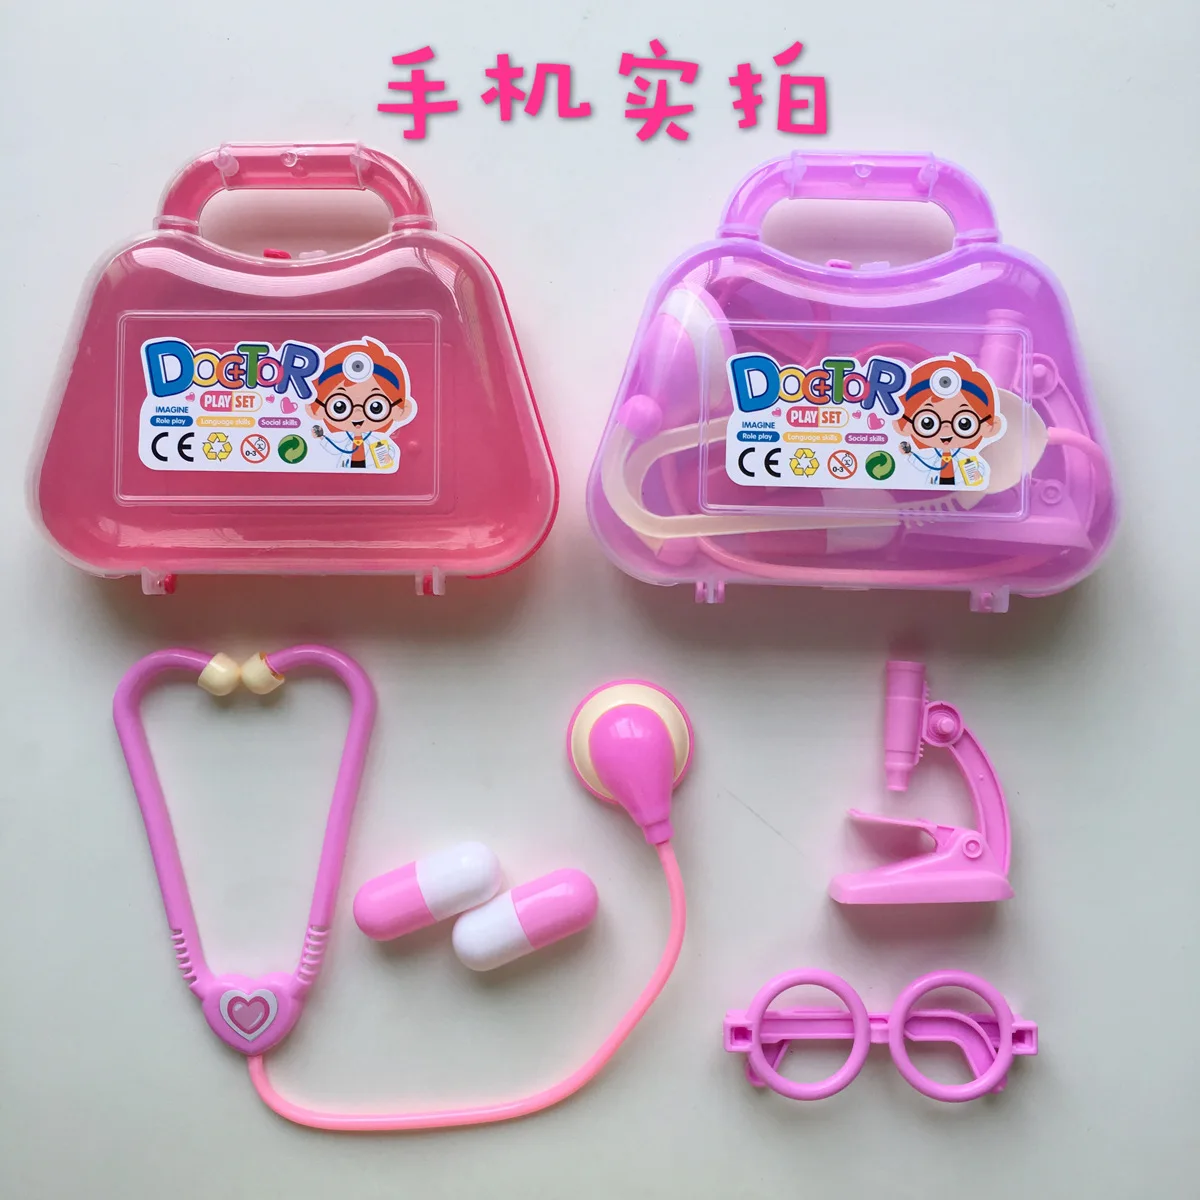 Детский игровой домик доктор игрушка медицинская ручная сумка девочка головоломка ручная игрушка 1. Случайная